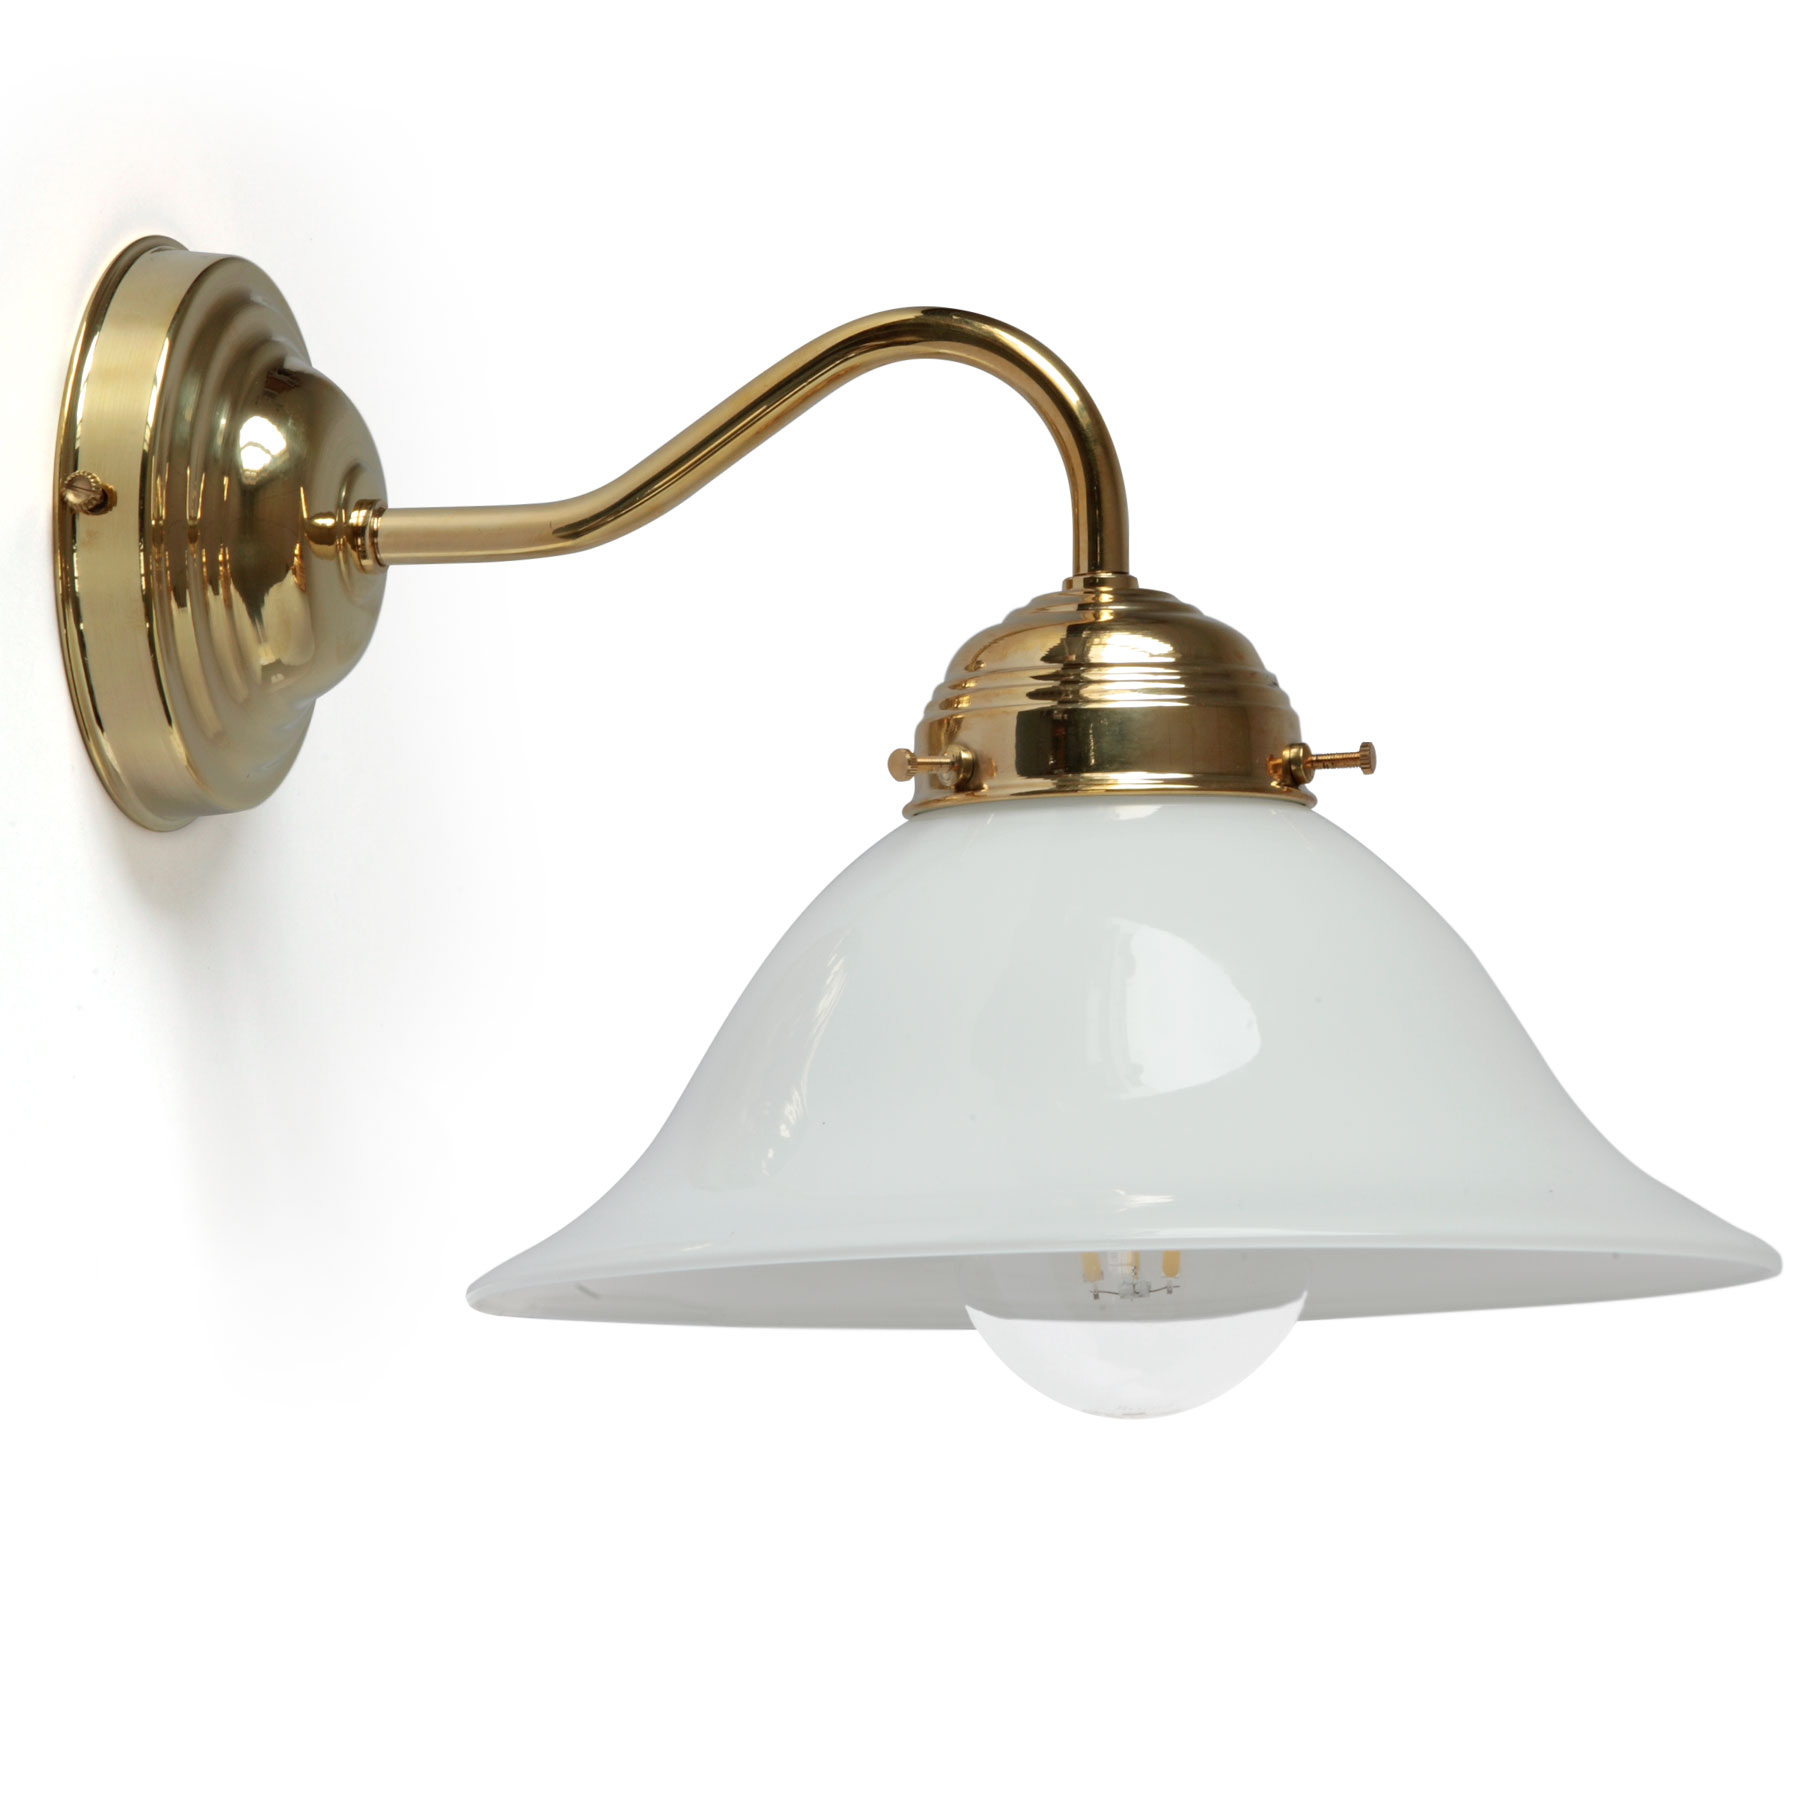 Jugendstil-Wandlampe aus Messing mit Glockenschirm: Eine elegante Wandlampe mit opalem Glasschirm Ø 22 cm, hier in Messing poliert, lackiert (weißes Glas)